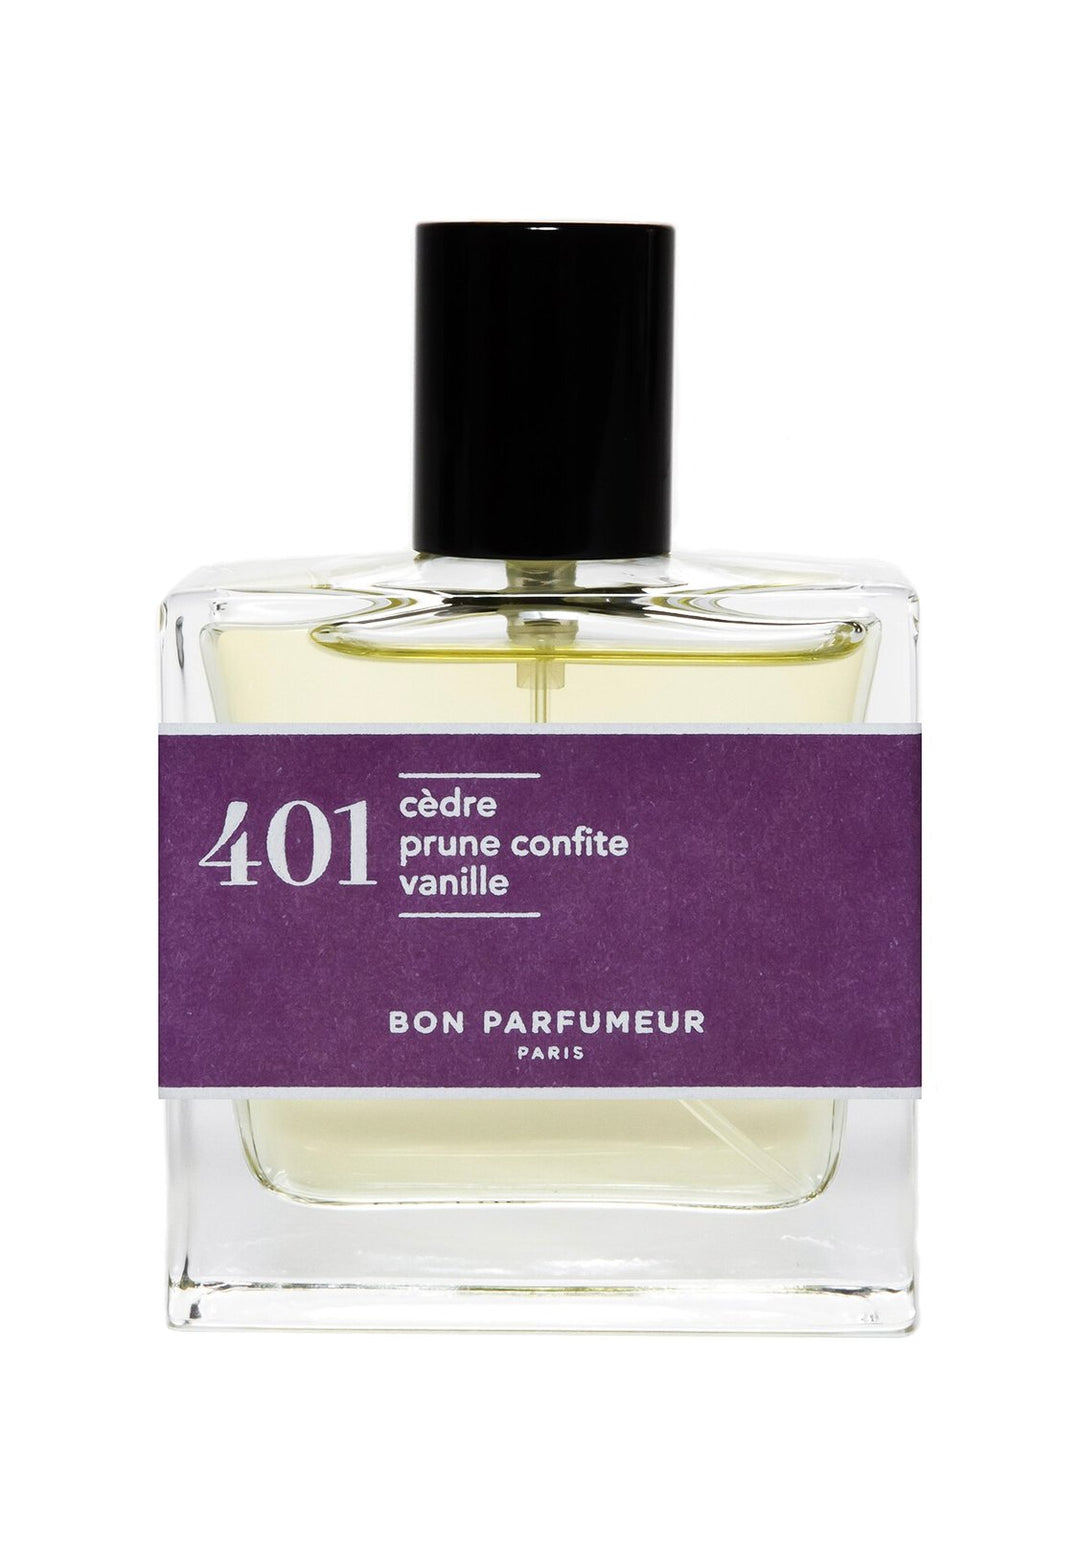 Eau de parfum 401